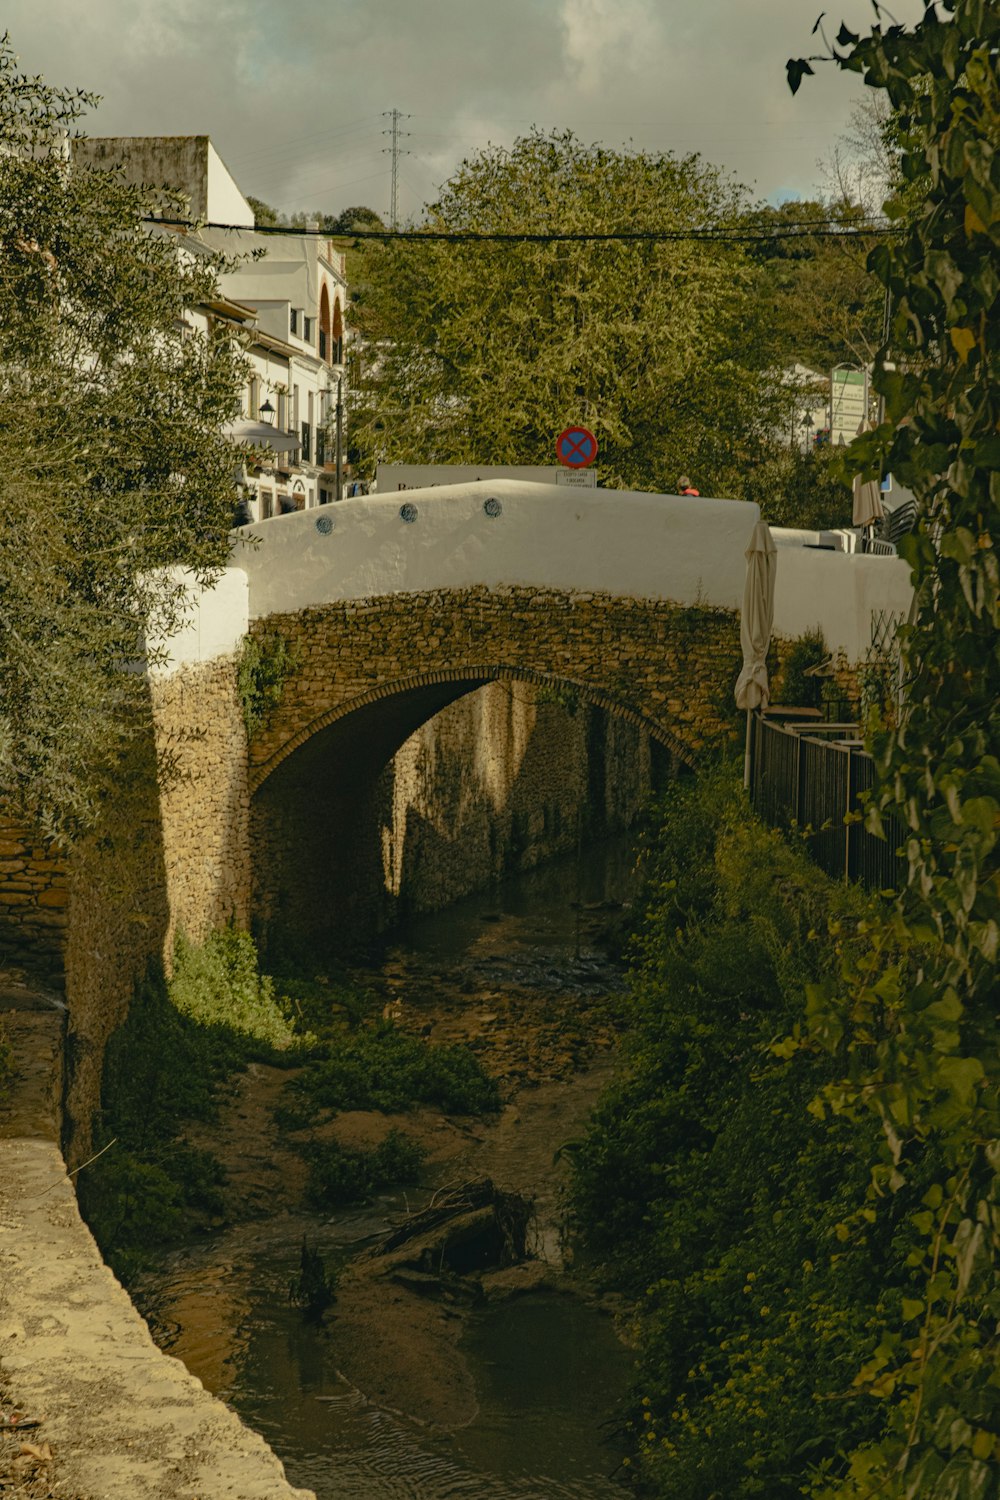 a stone bridge over a small stream in a city